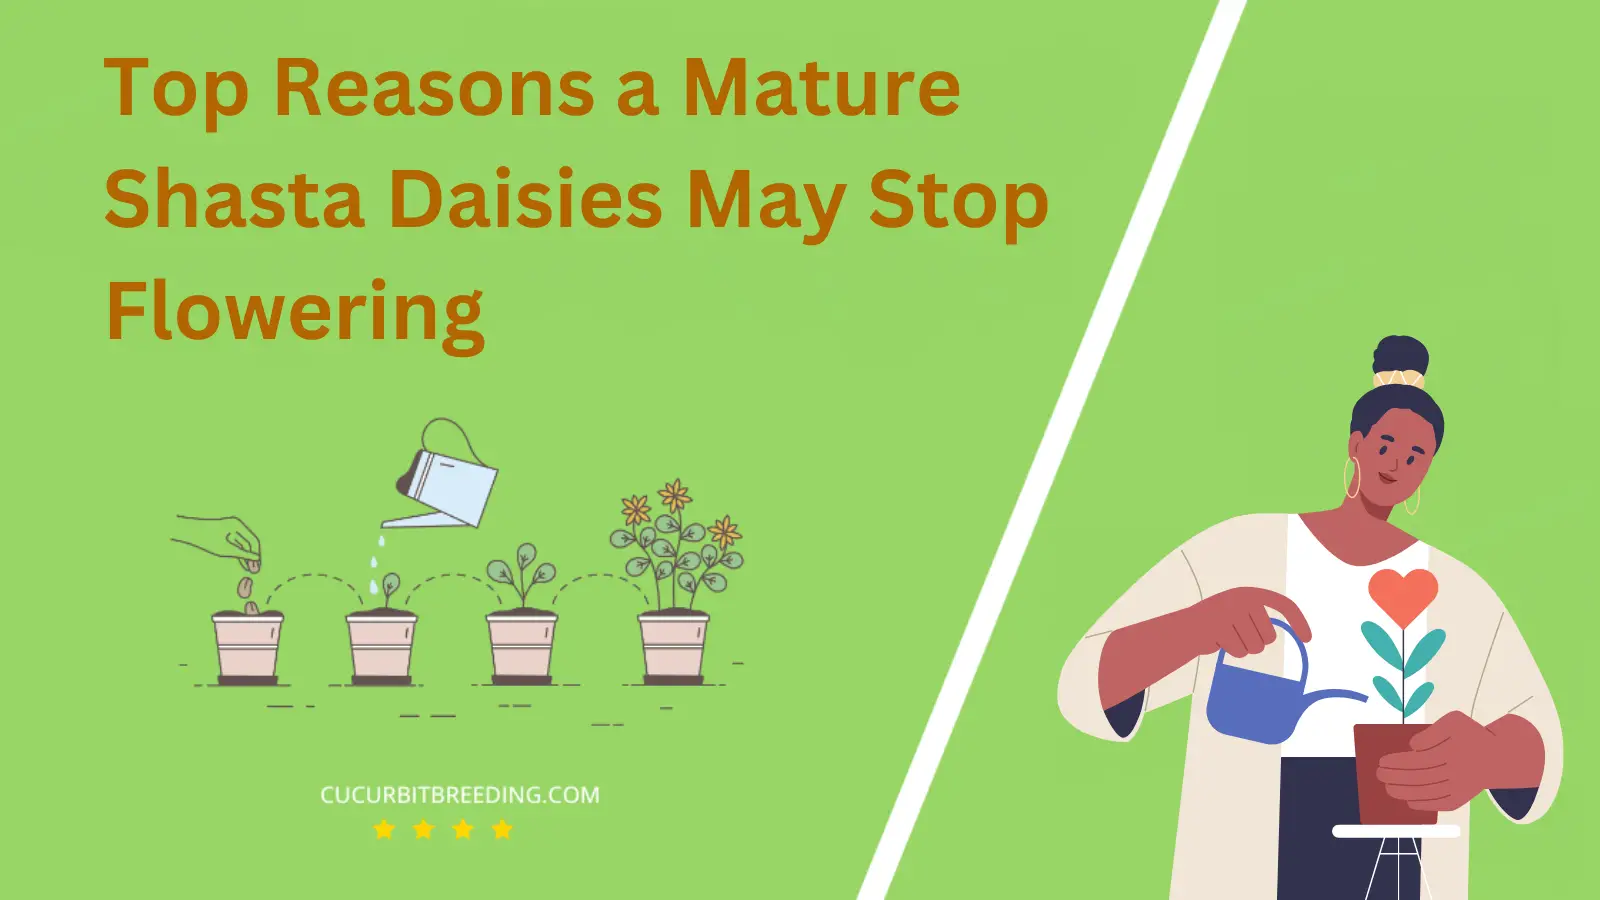 Top Reasons a Mature Shasta Daisies May Stop Flowering